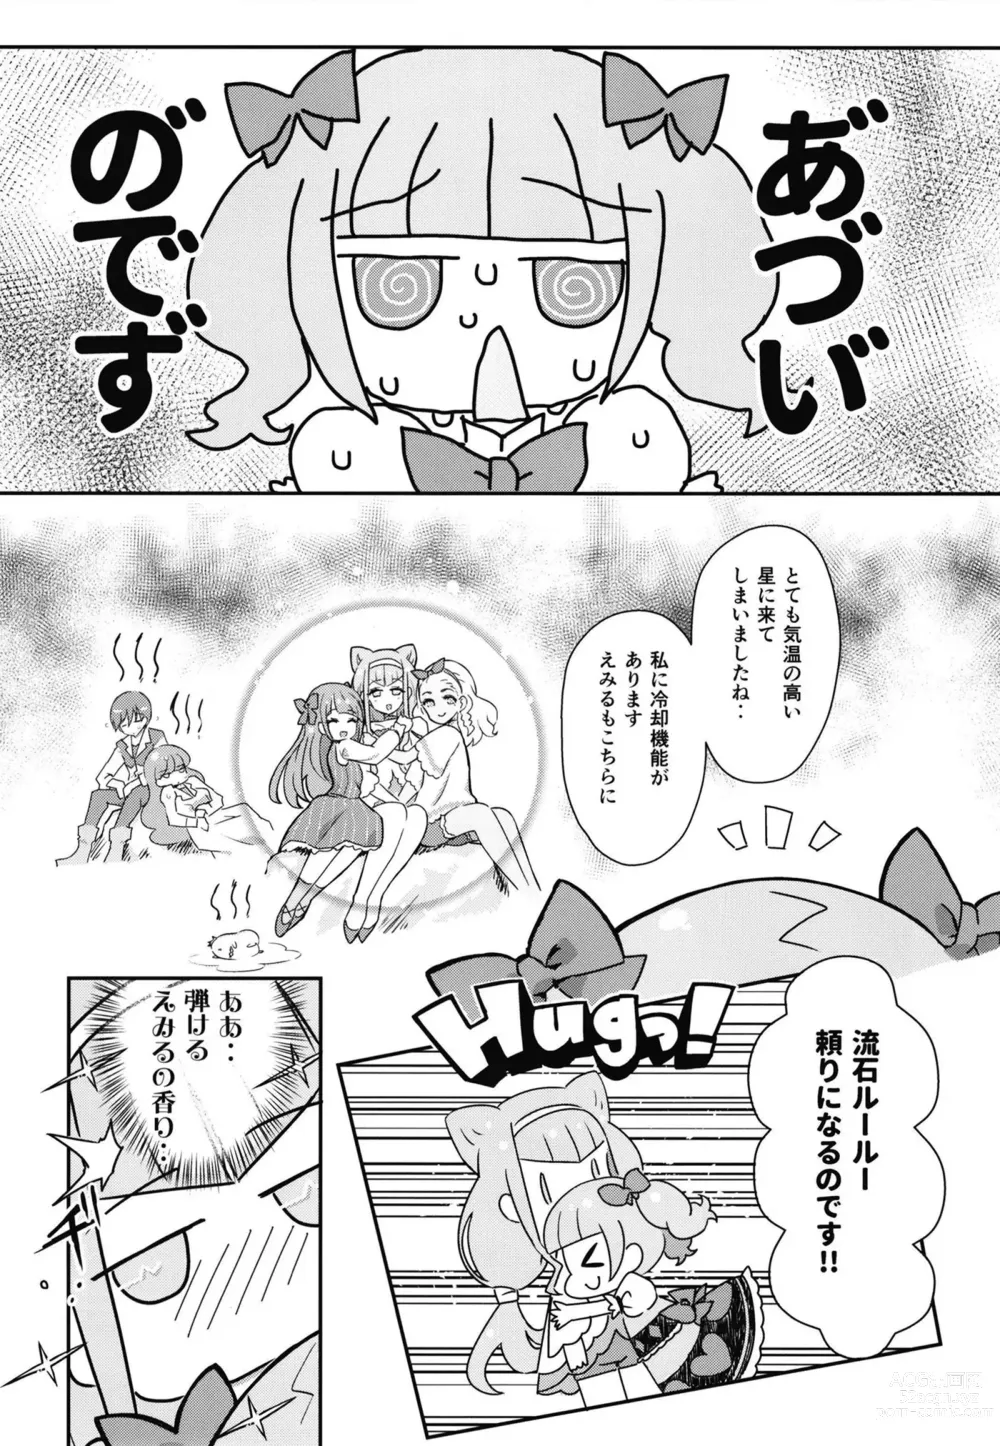 Page 3 of doujinshi Sho